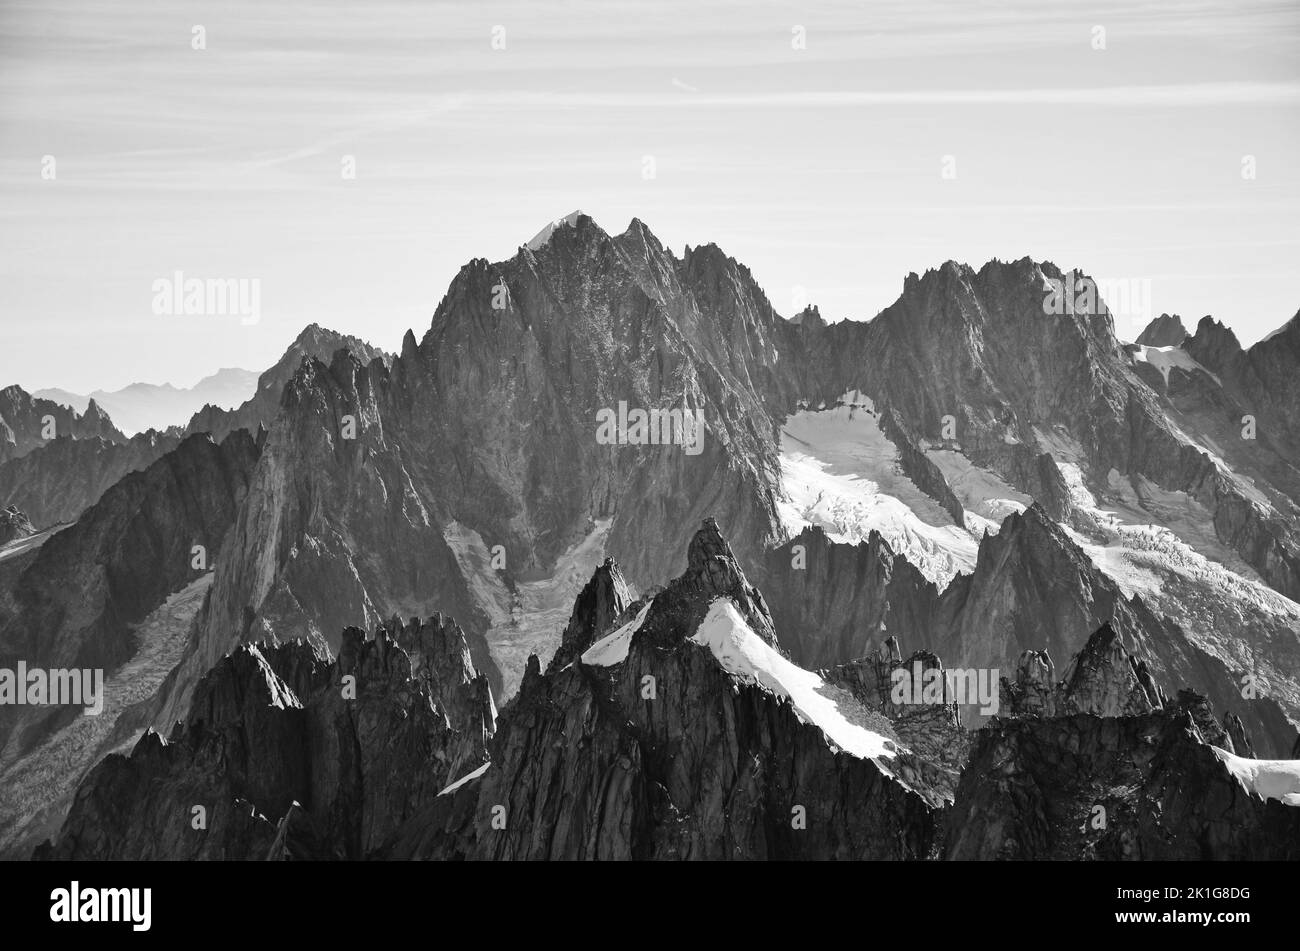 fantastiche vette montane del massiccio dell'aiguille du tacul monte bianco fotografate dall'aiguille du midi , chamonix Foto Stock